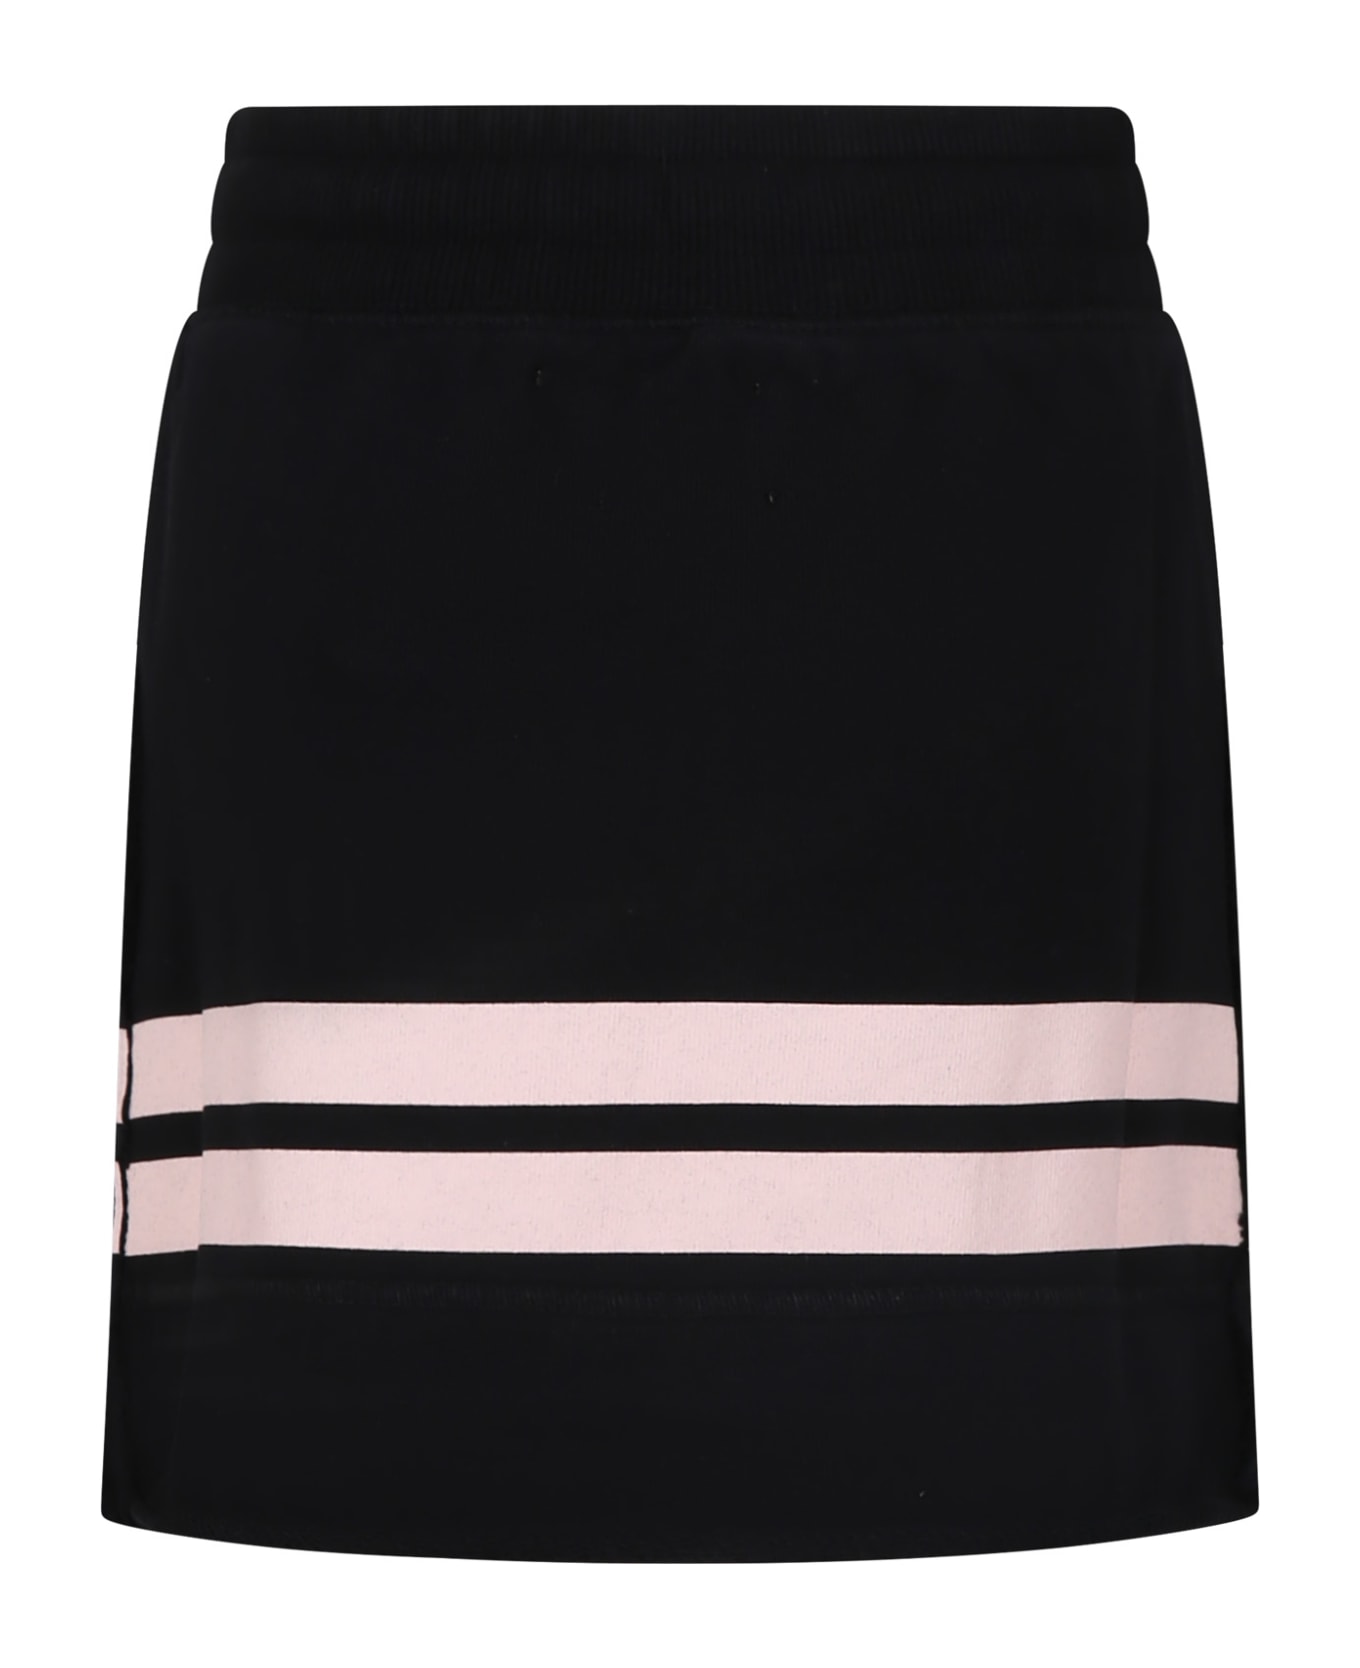 Off-White Black Skirt For Girl With Logo - Black ボトムス